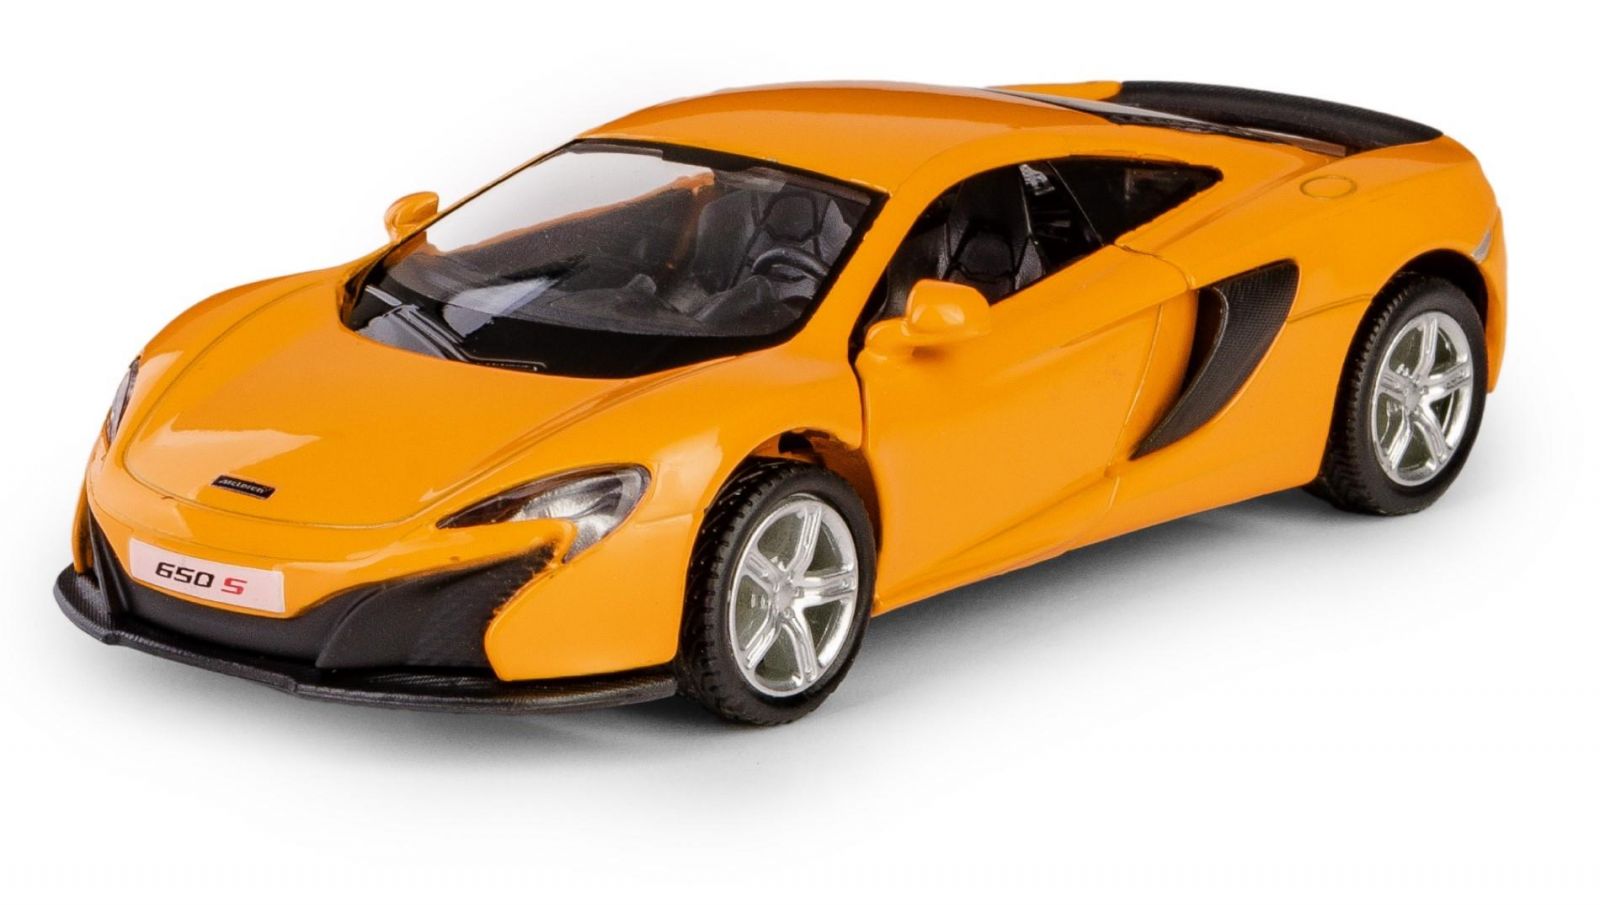 Autíčko RMZ 1:32 - McLaren 650S - oranžová barva Daffi